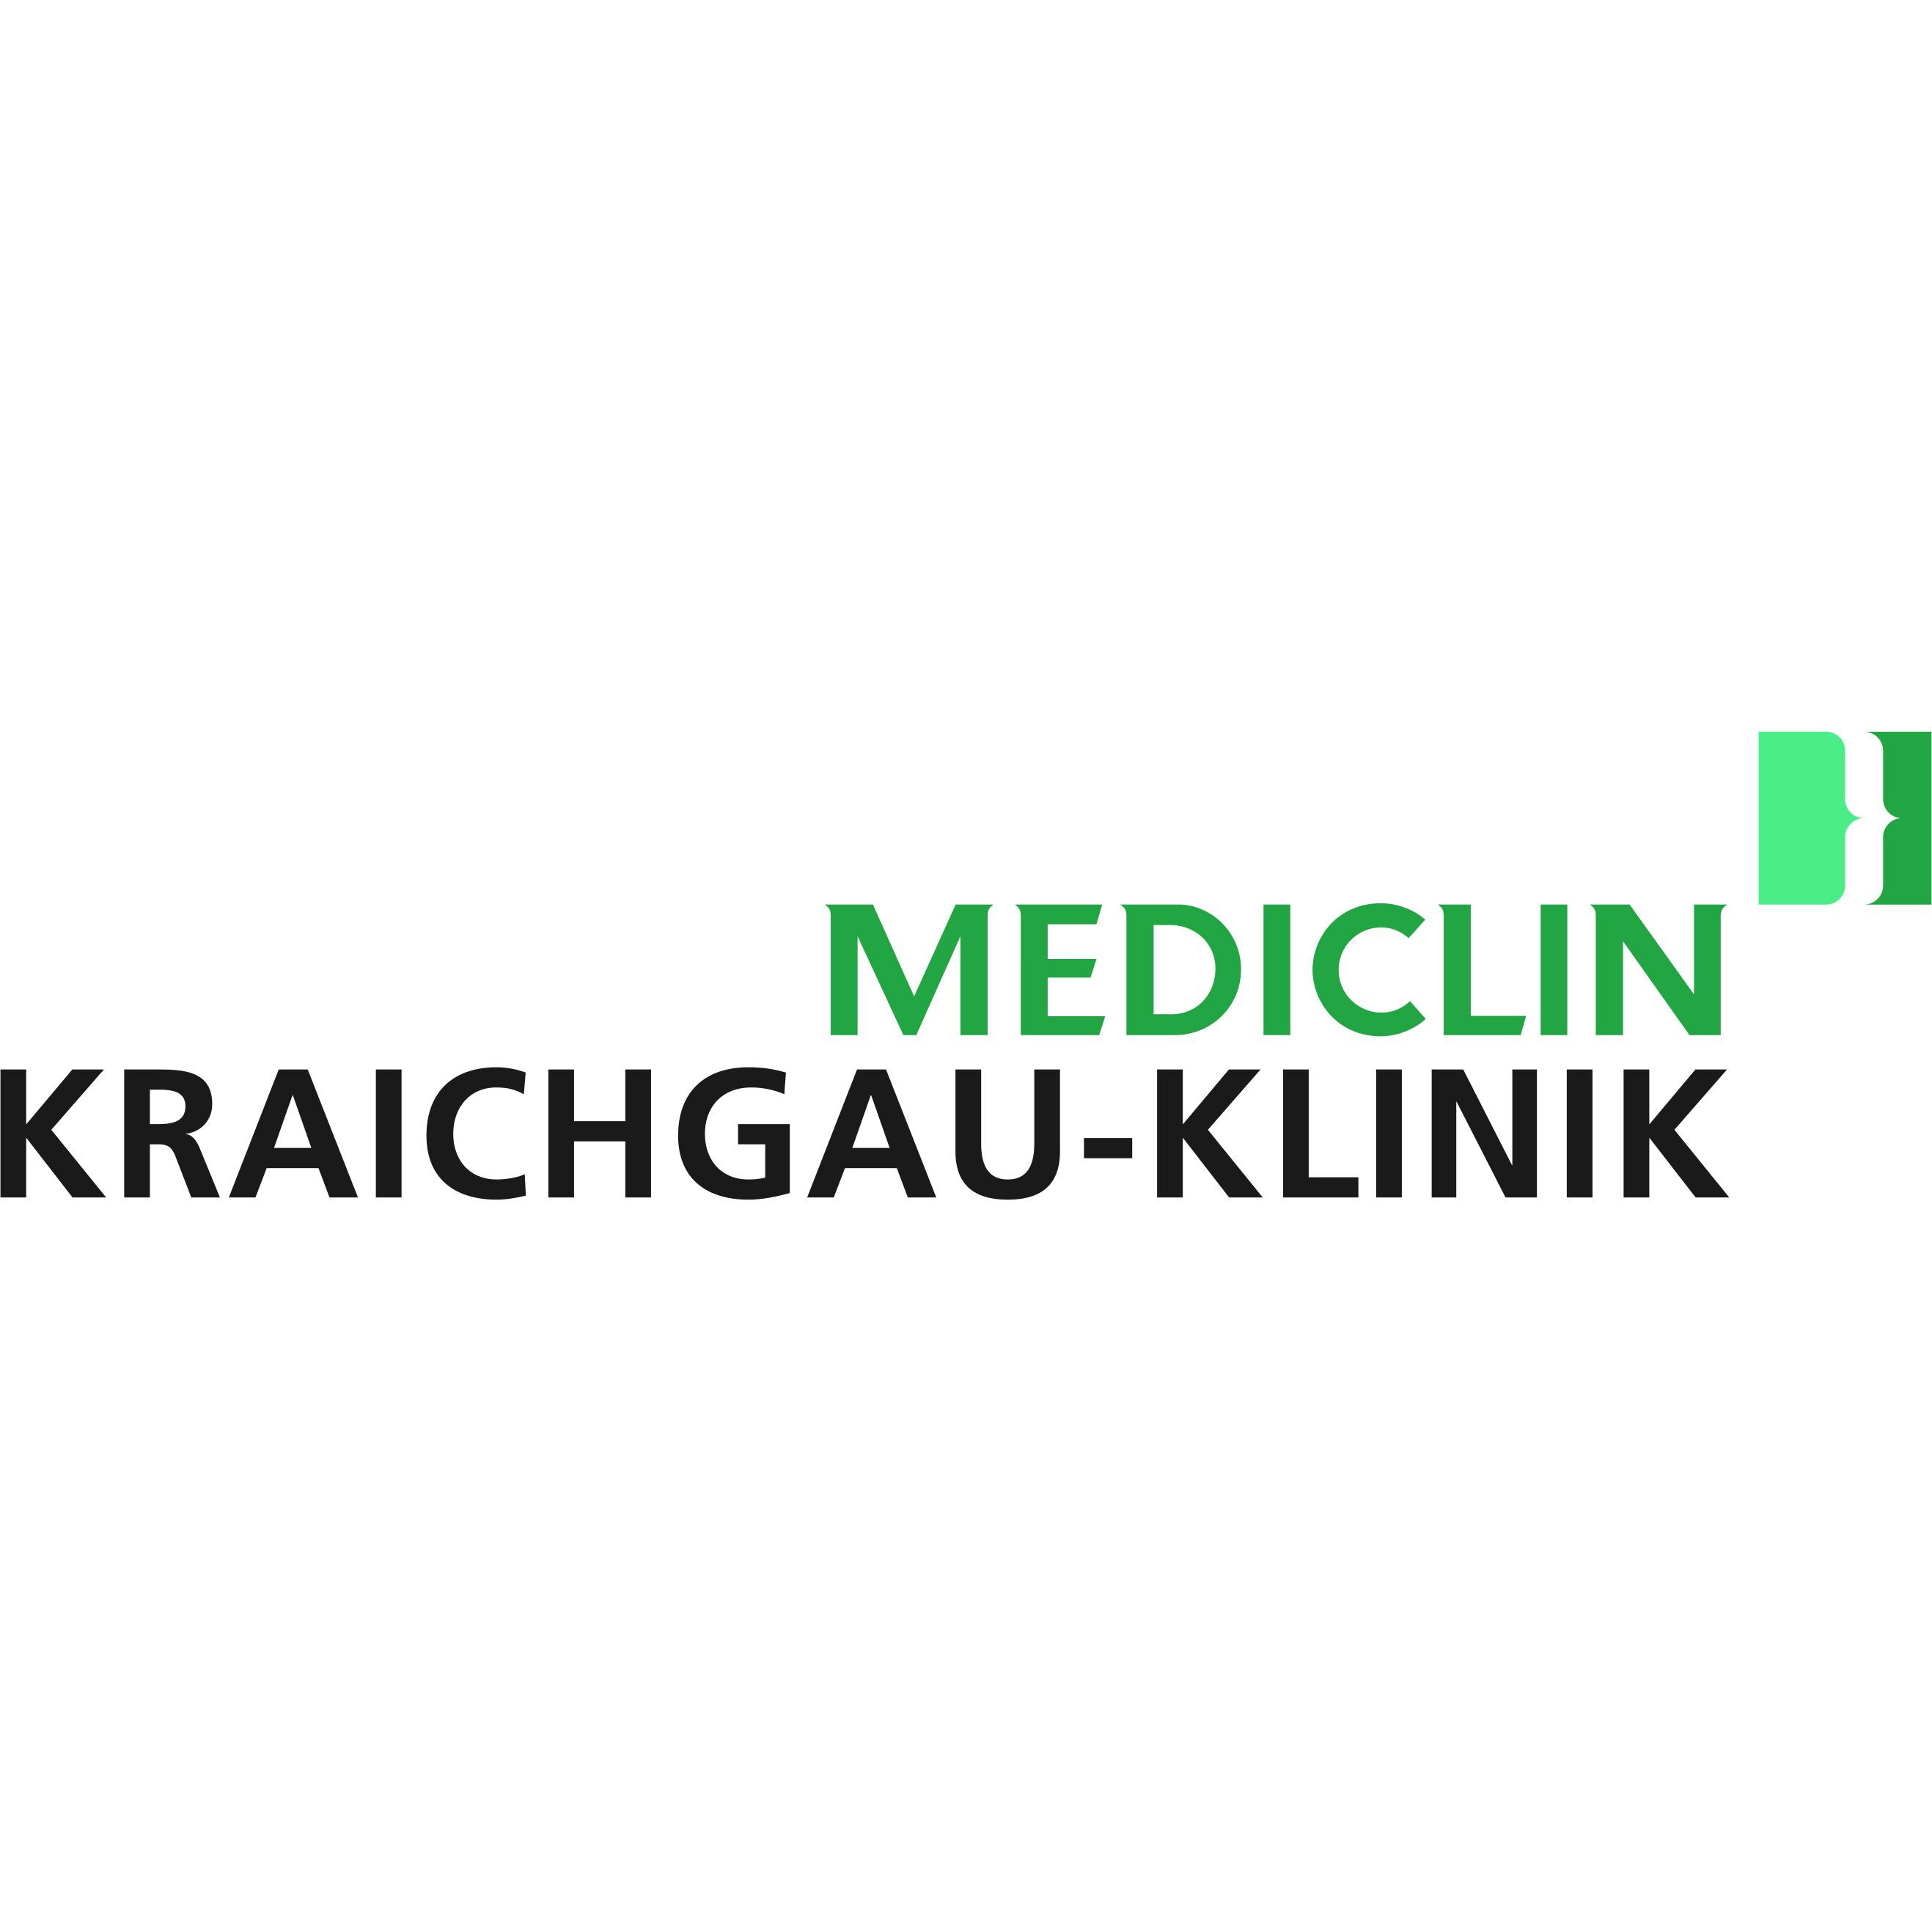 MEDICLIN Kraichgau-Klinik in Bad Rappenau - Logo